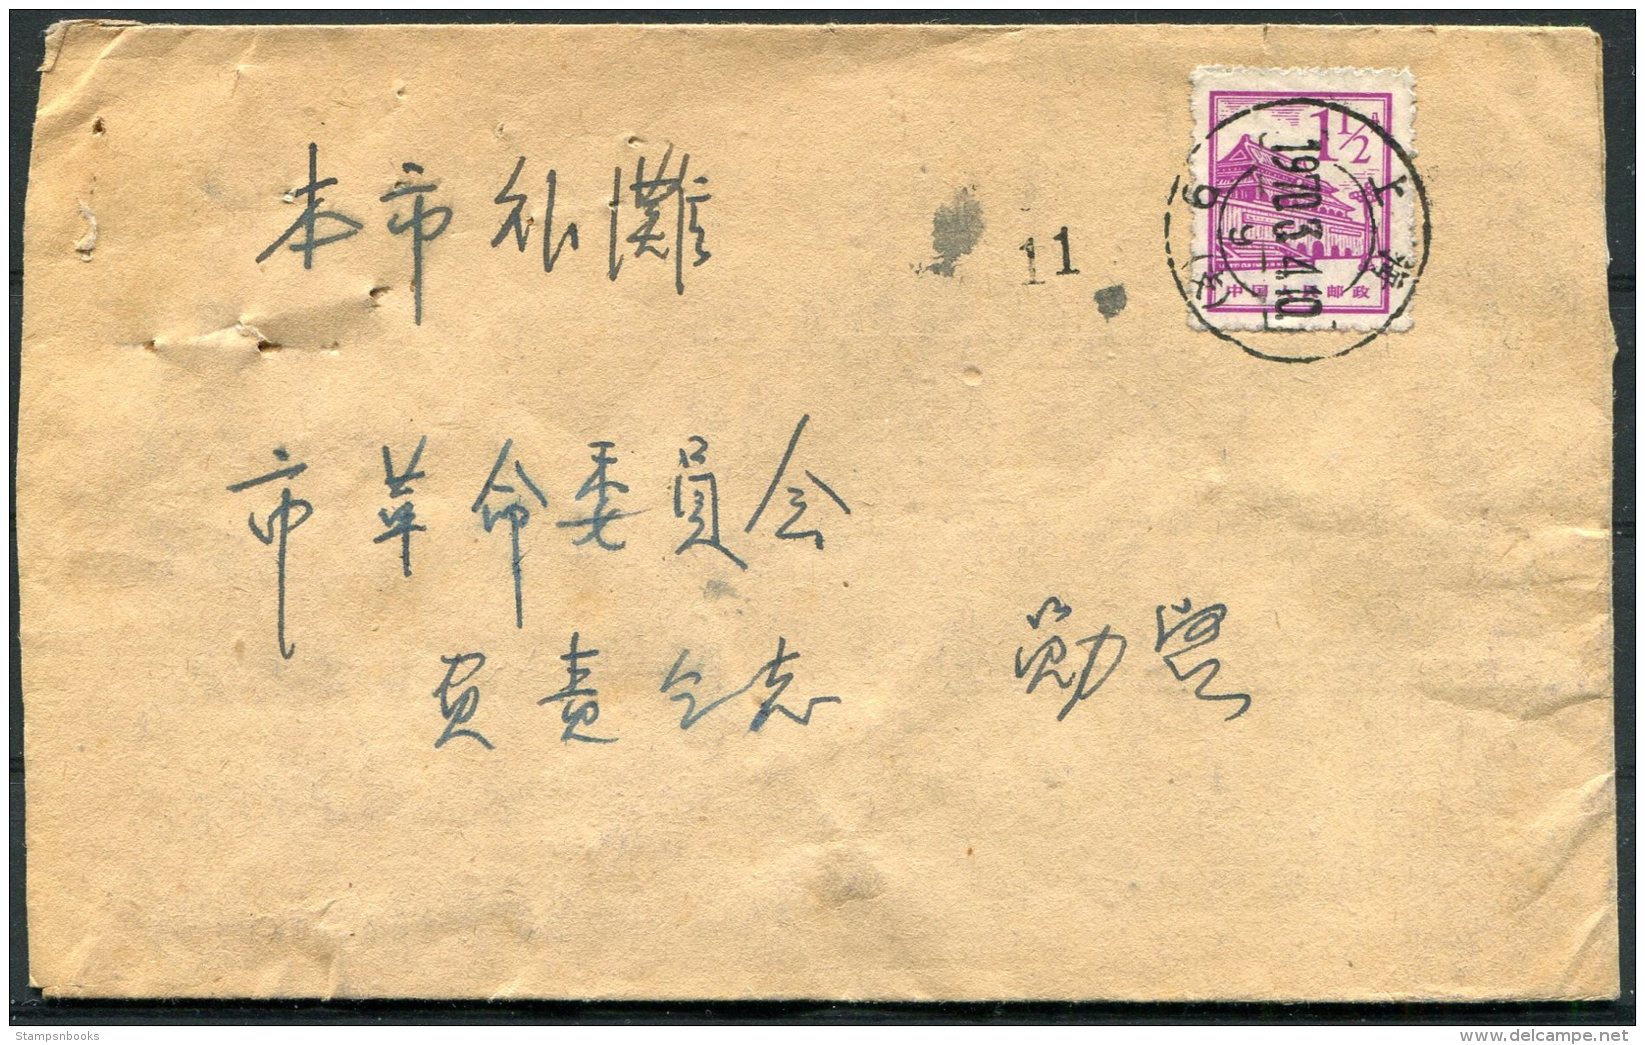 1970 China Cover - Briefe U. Dokumente